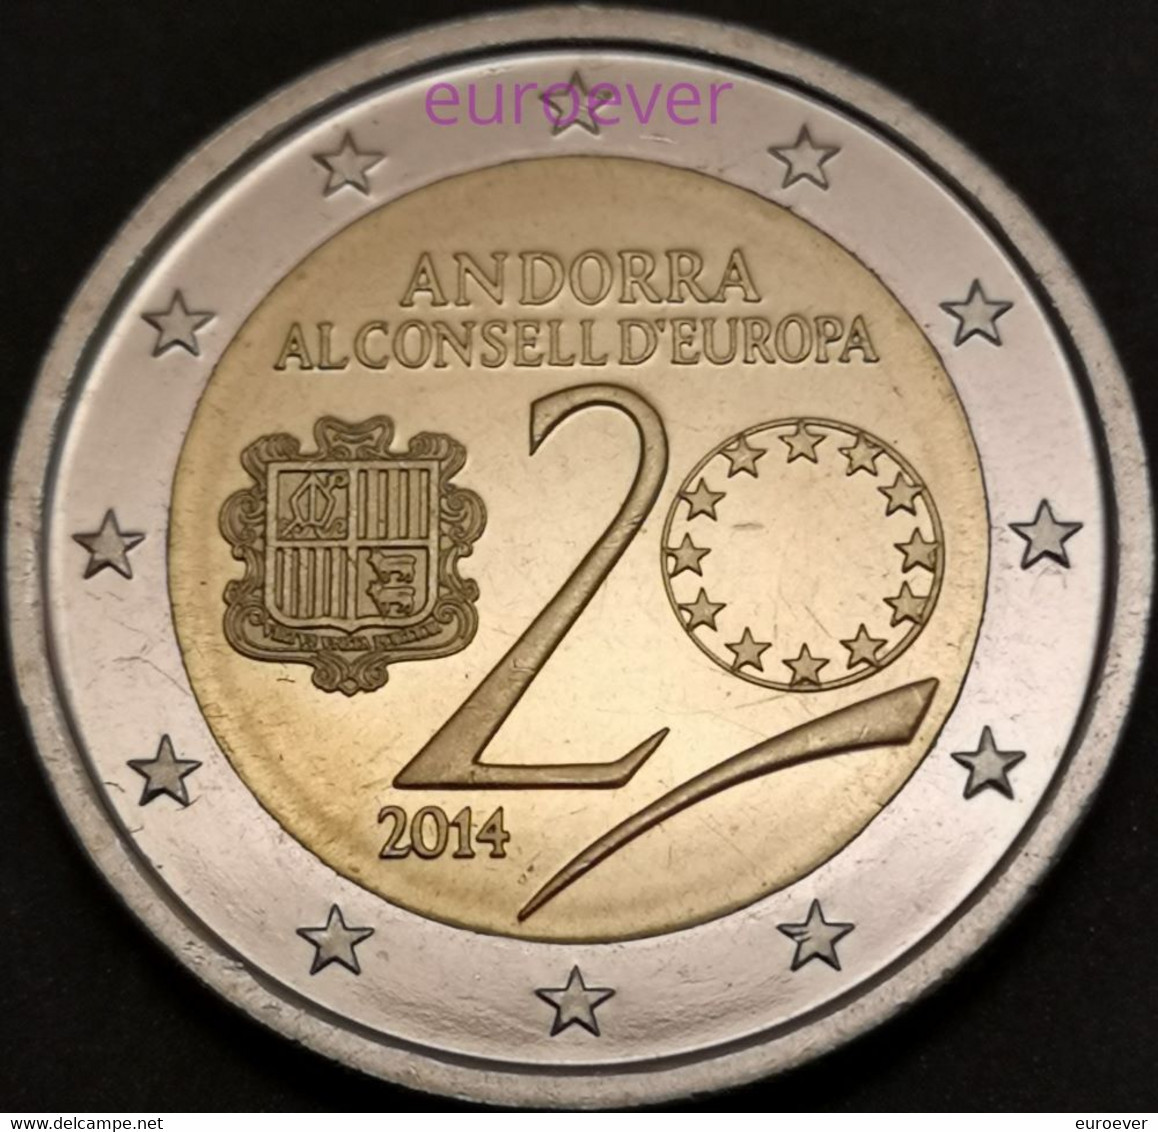 2 Euro Gedenkmünze 2014 Nr. 27 - Andorra - Mitgliedschaft Im Europarat UNC Aus BU Coincard - Andorre